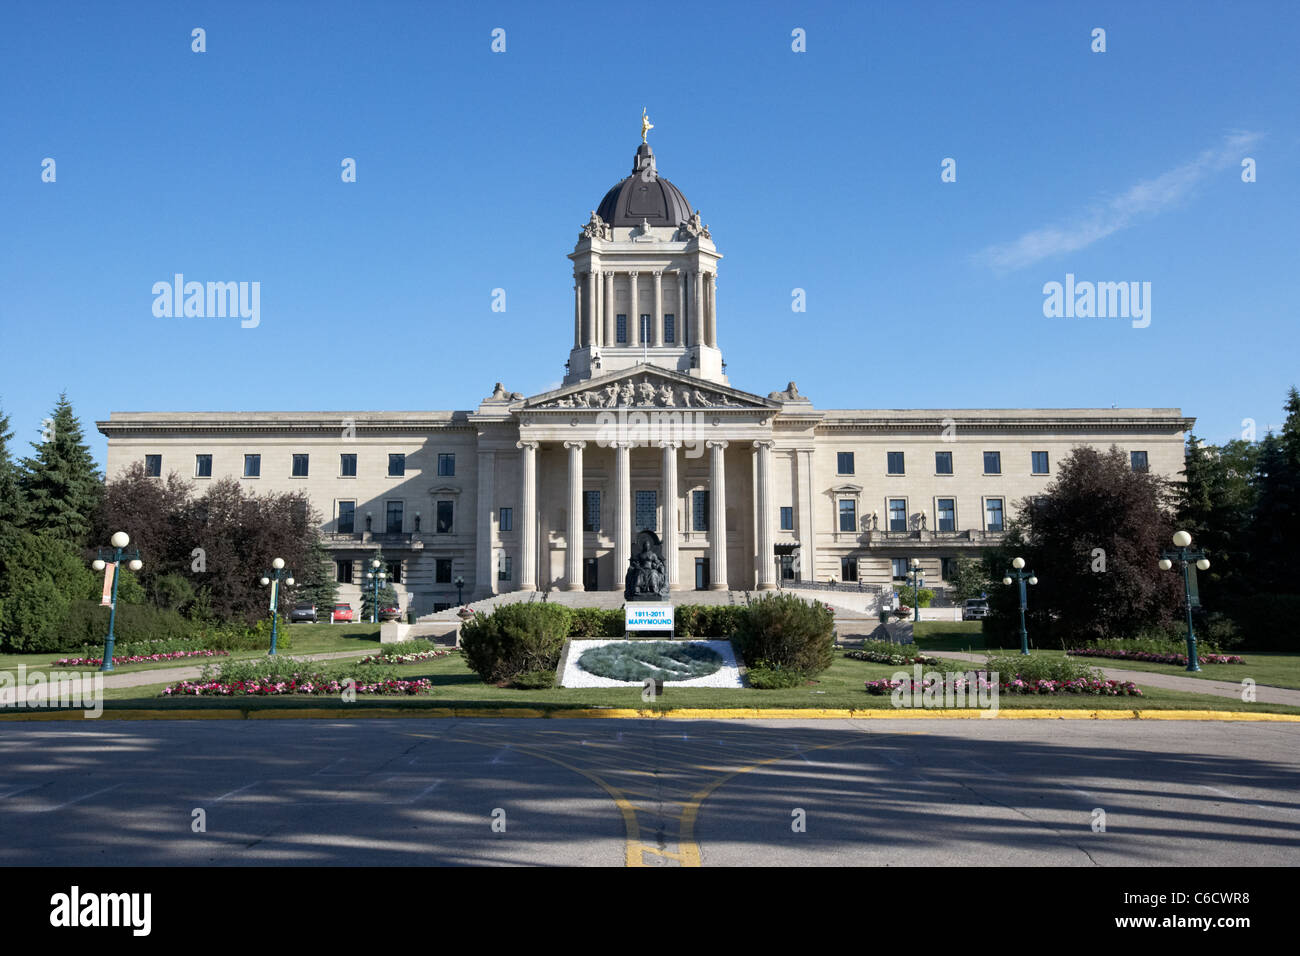 Édifice de l'assemblée législative du Manitoba Winnipeg Manitoba canada Banque D'Images